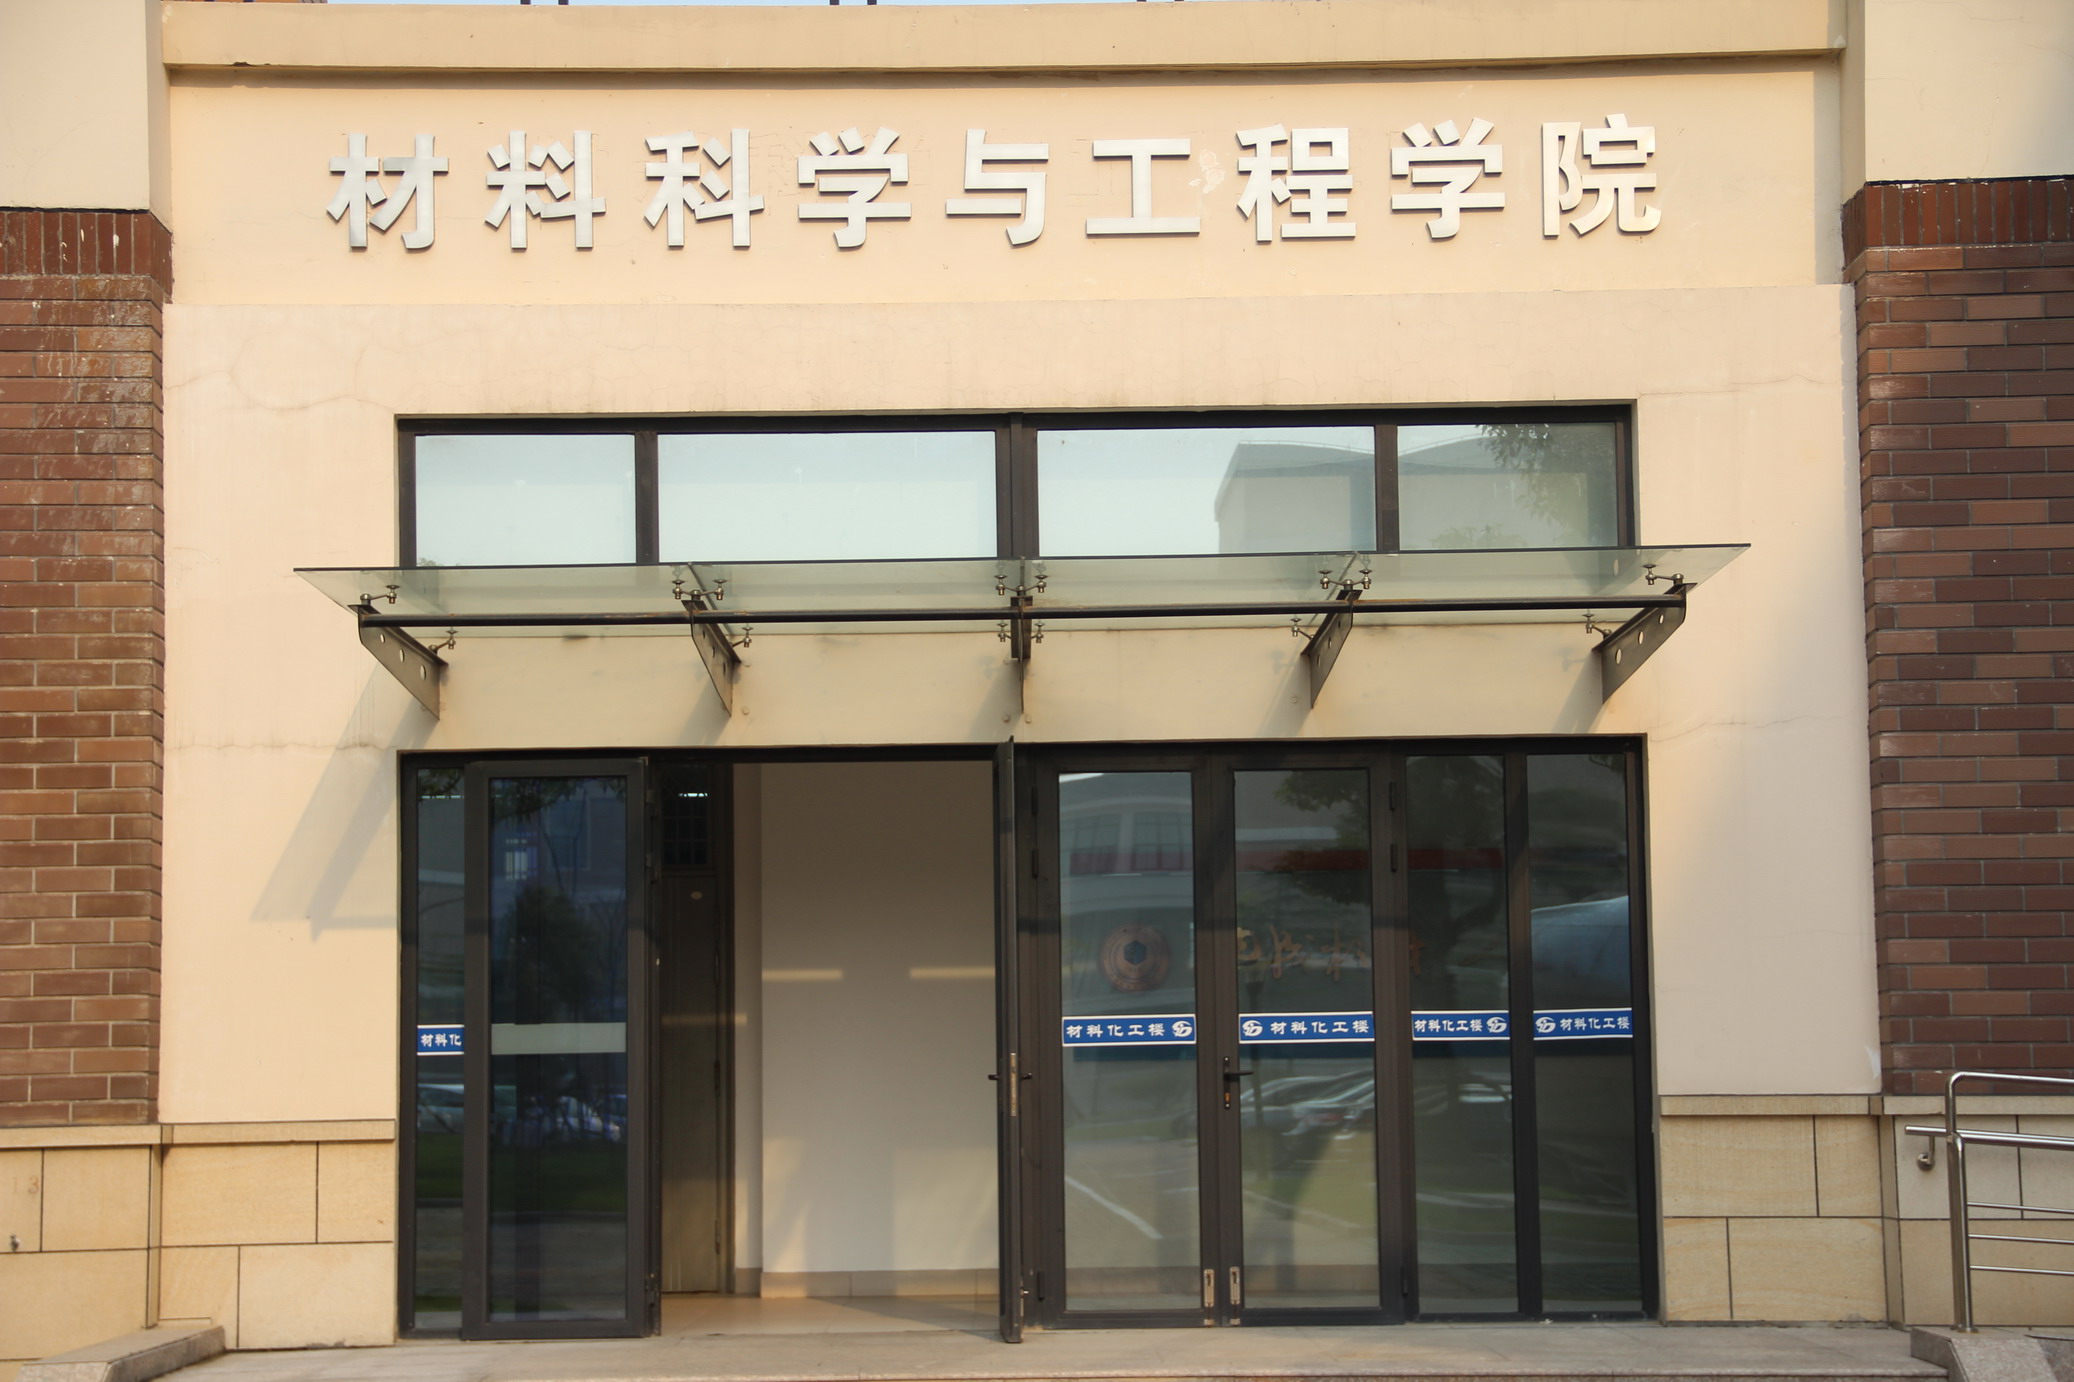 上海套用技術學院材料科學與工程學院